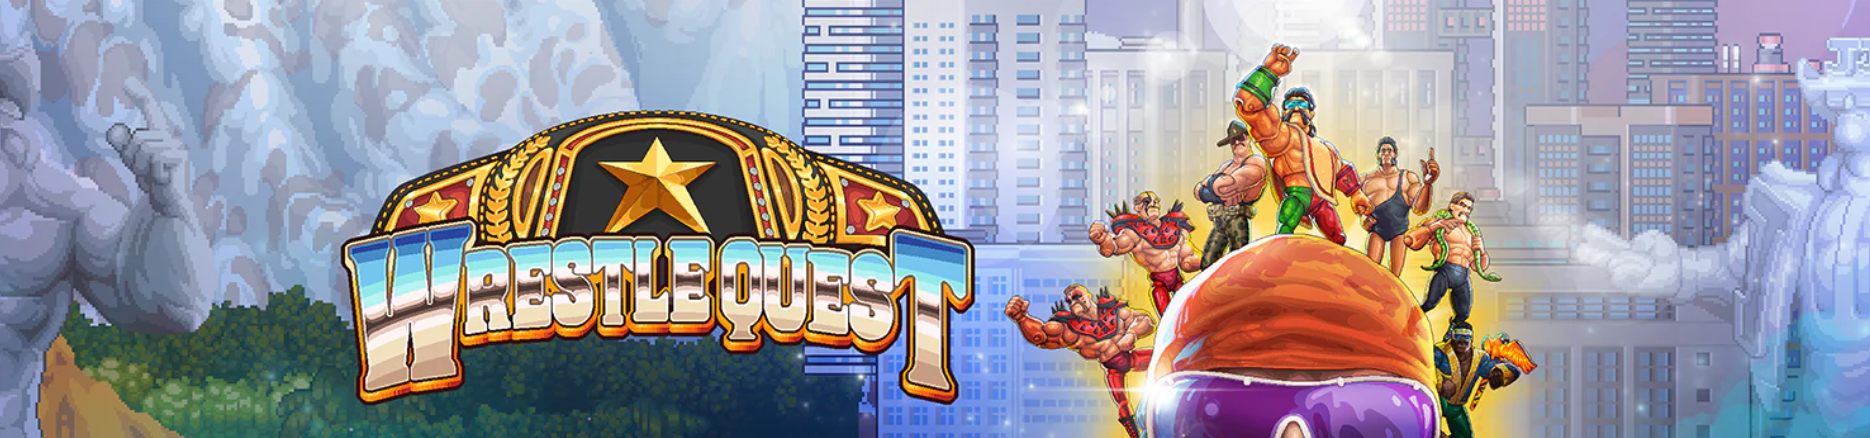 wrestlequest banner